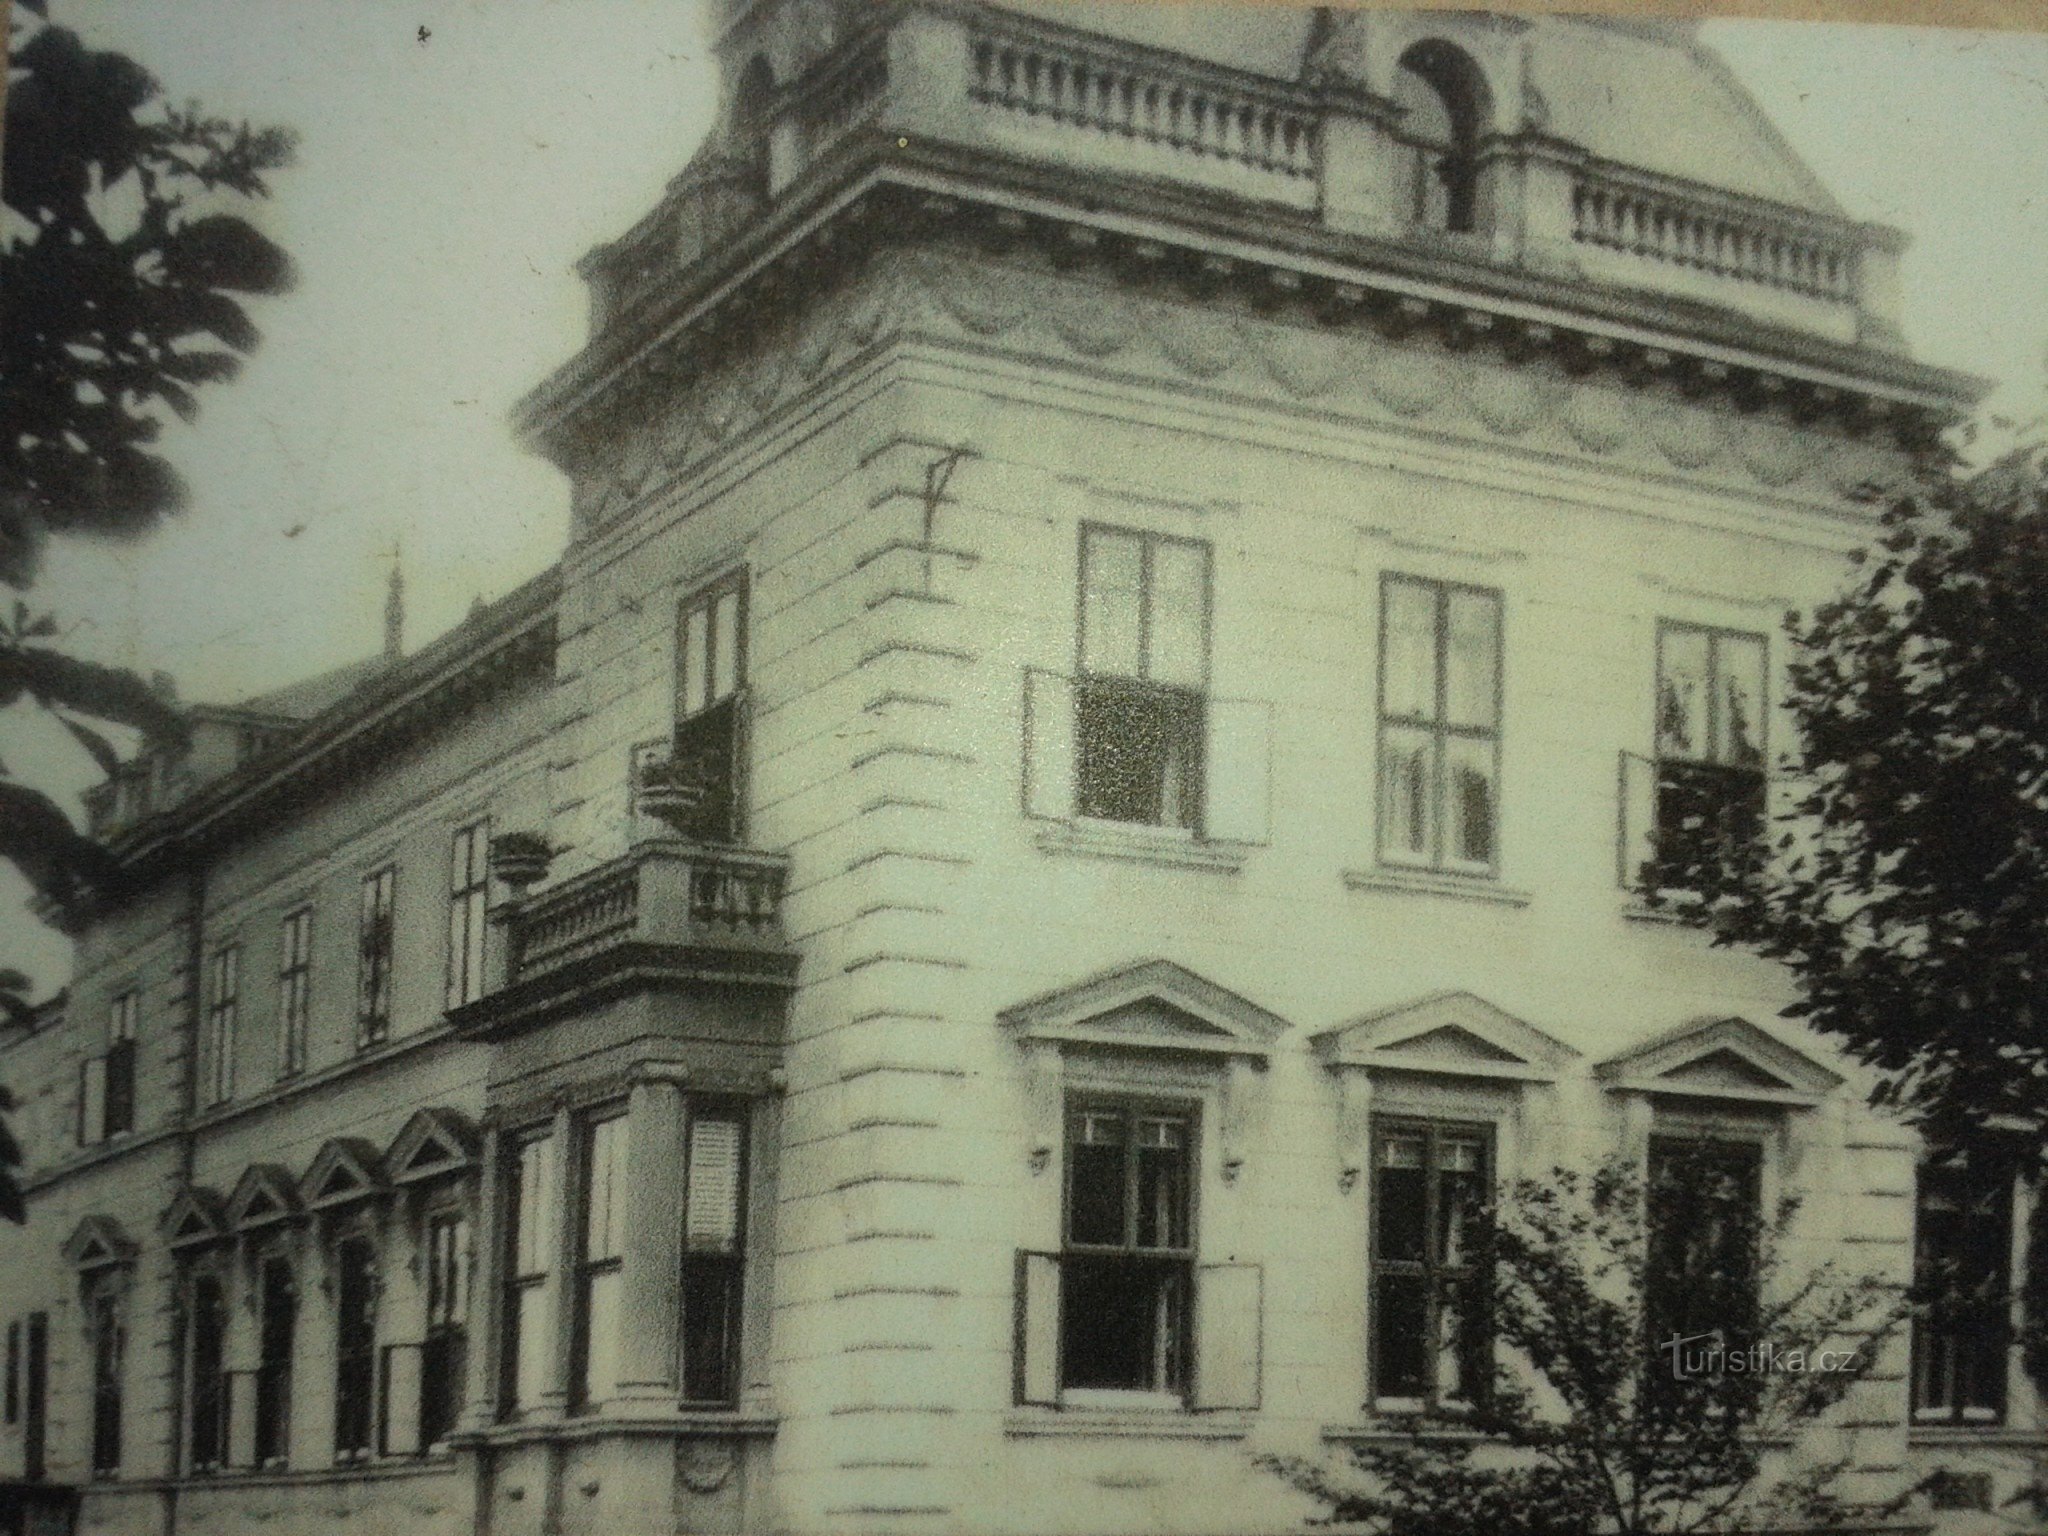 παλιά φωτογραφία του κτιρίου - μέρος του κυκλώματος της πόλης